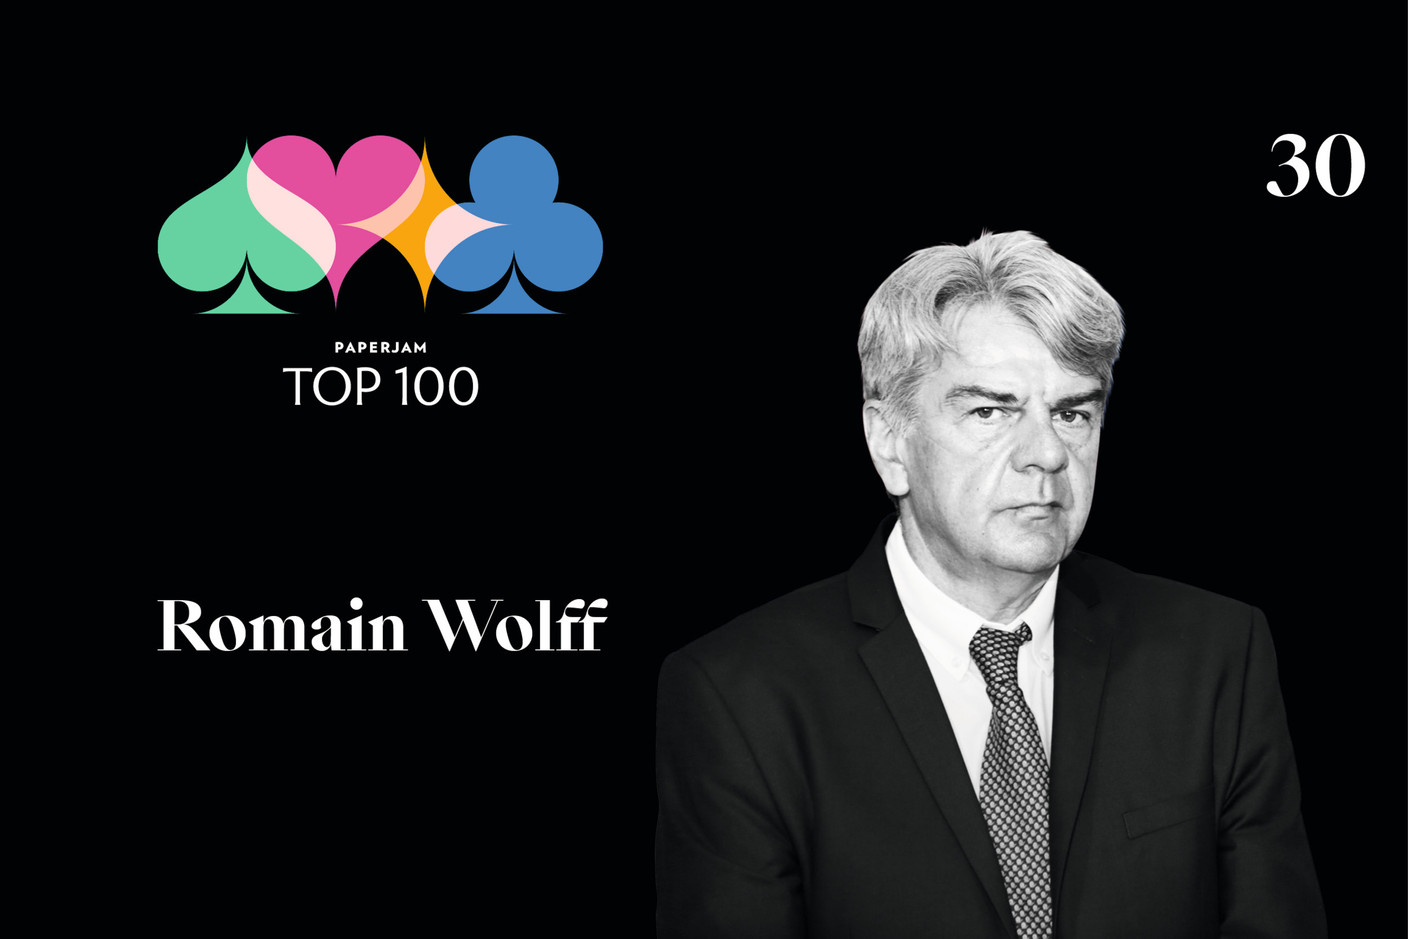 Romain Wolff, 30e du Paperjam Top 100 2020. (Illustration: Maison Moderne)